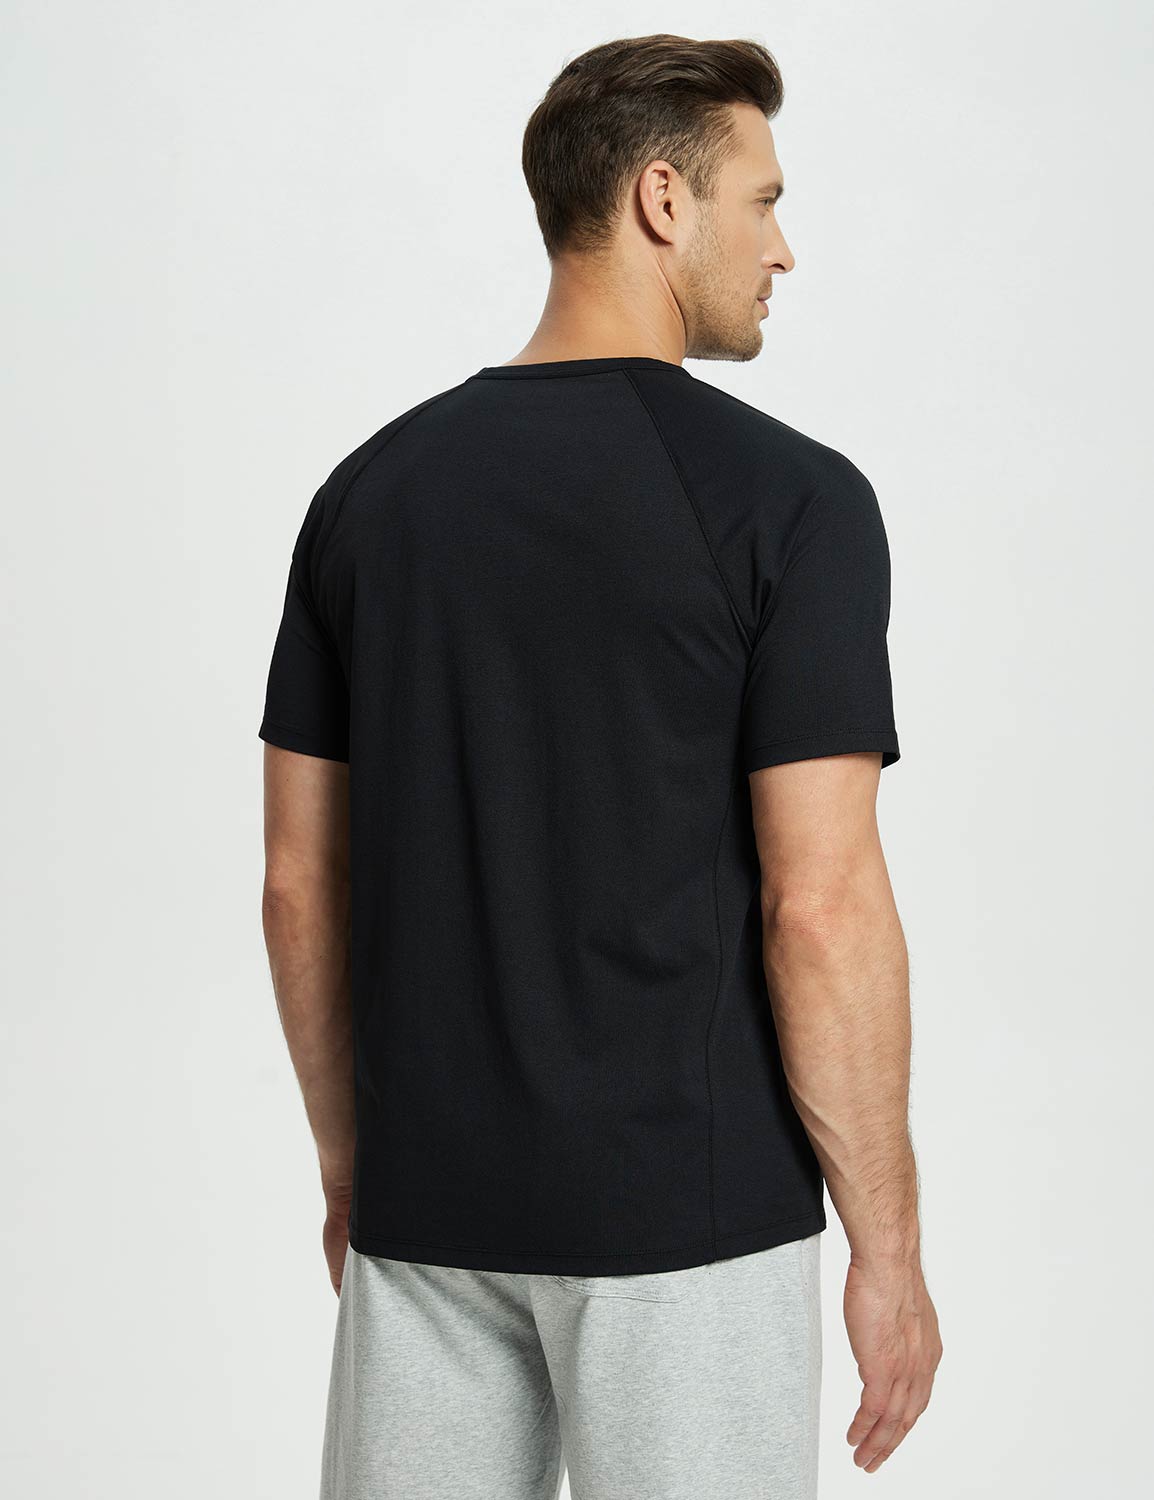 Baleaf Men's Short-Sleeve Henley T-Shirt (Website Exclusive) dbd067 Jet Black Back